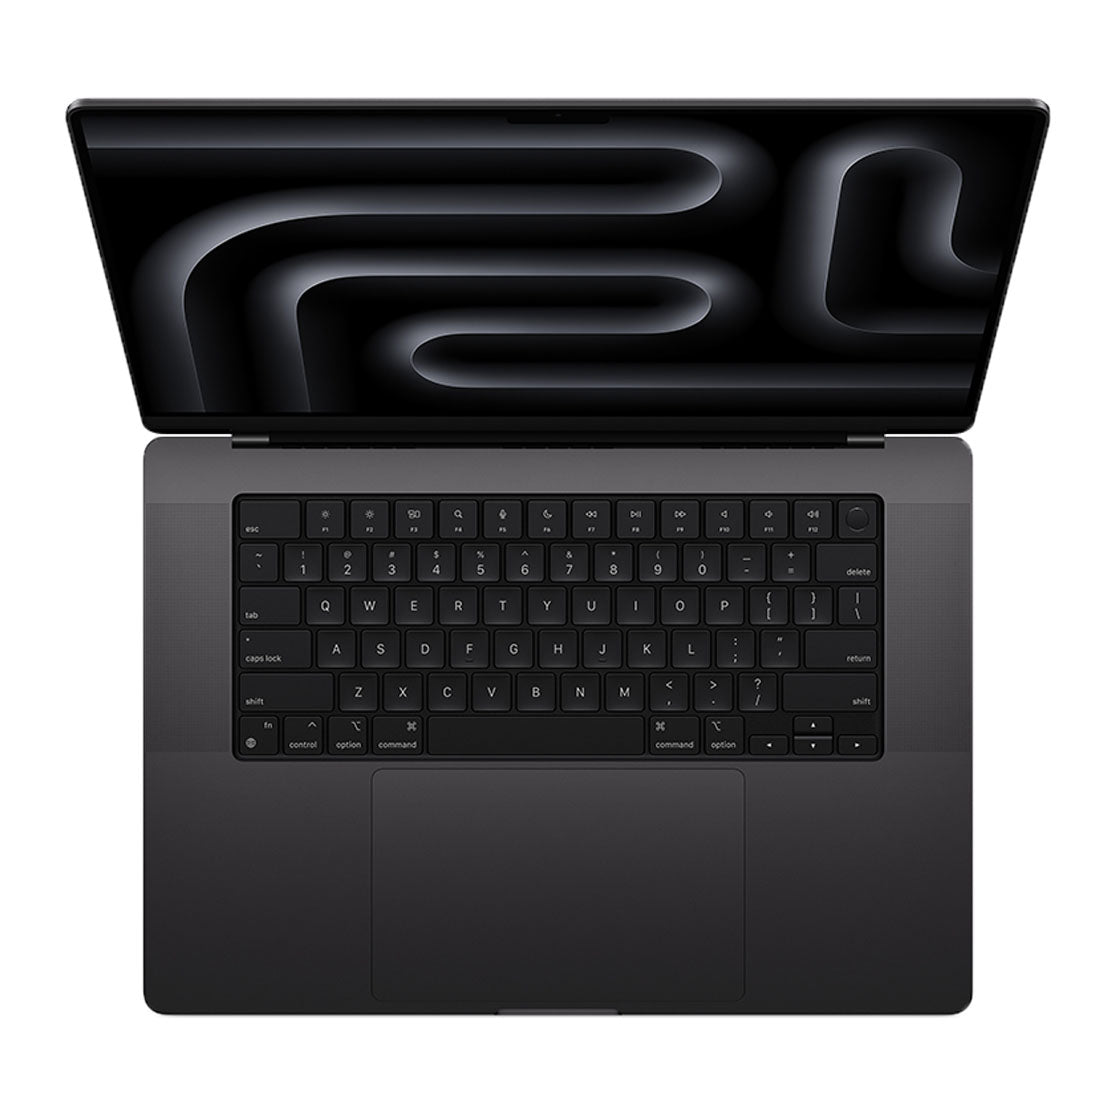 Space black keys, M3 MacBook: Elegance meets functionality